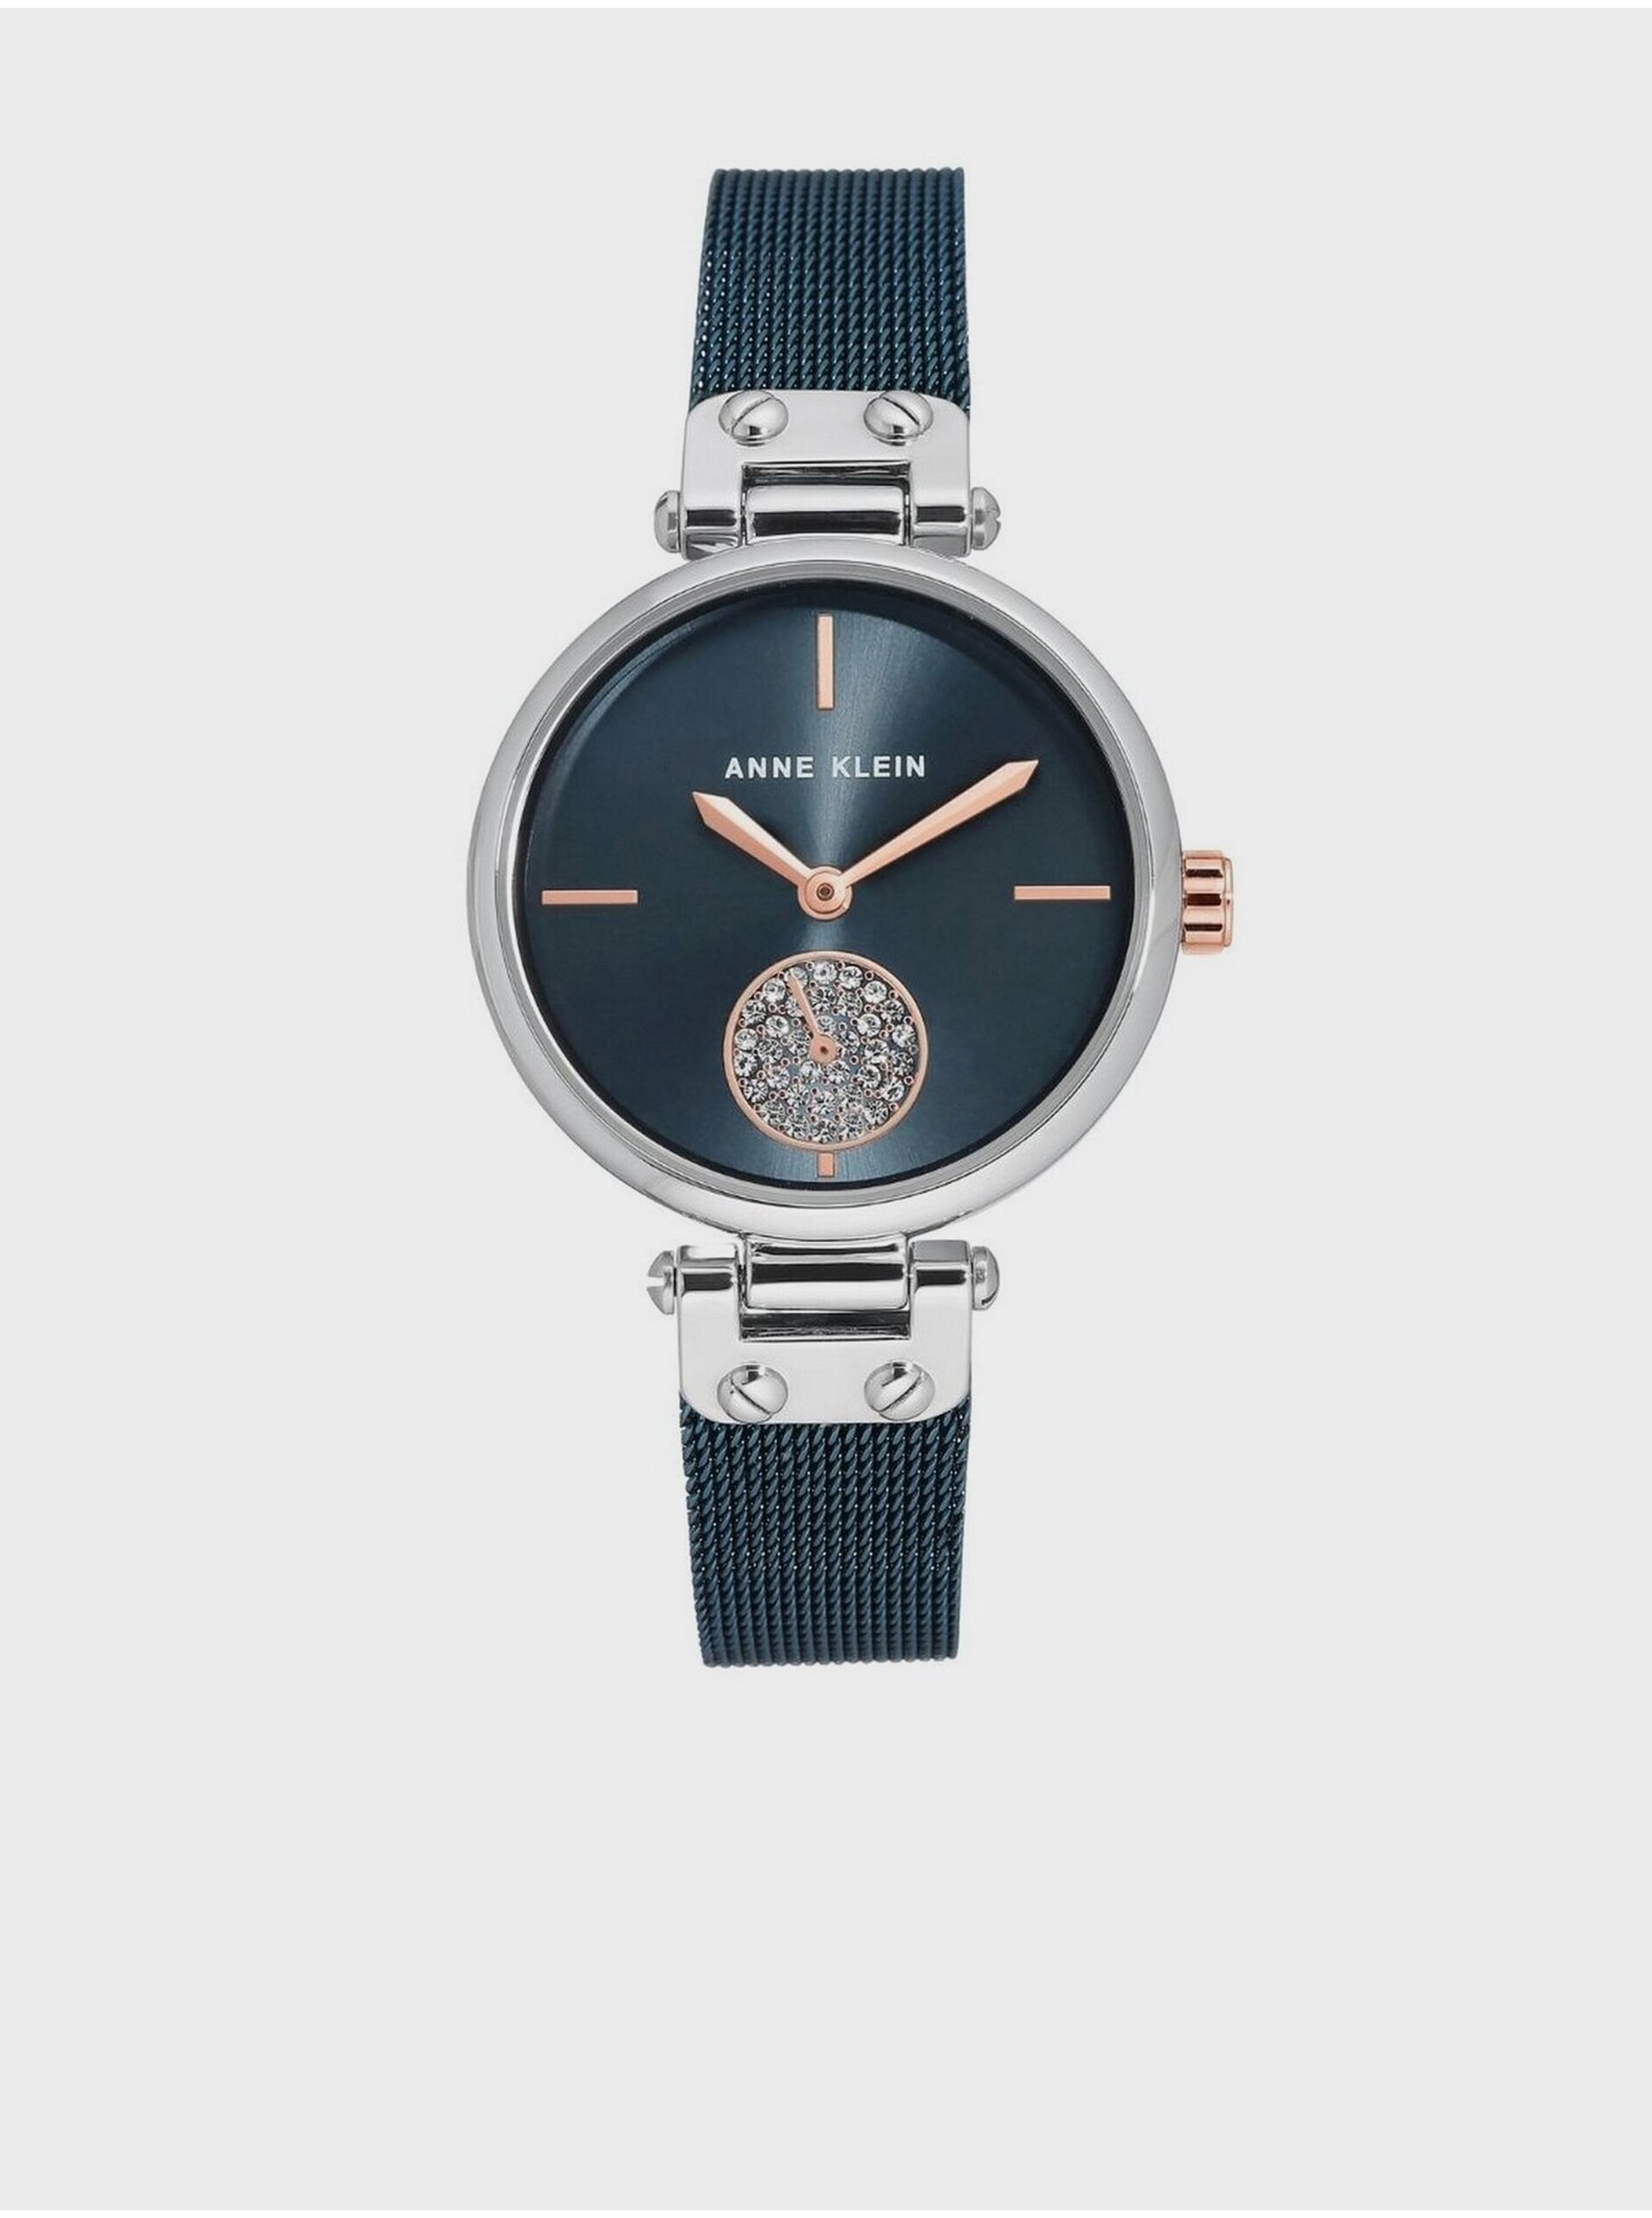 Lacno Tmavomodré dámske hodinky s detailmi v striebornej farbe Anne Klein